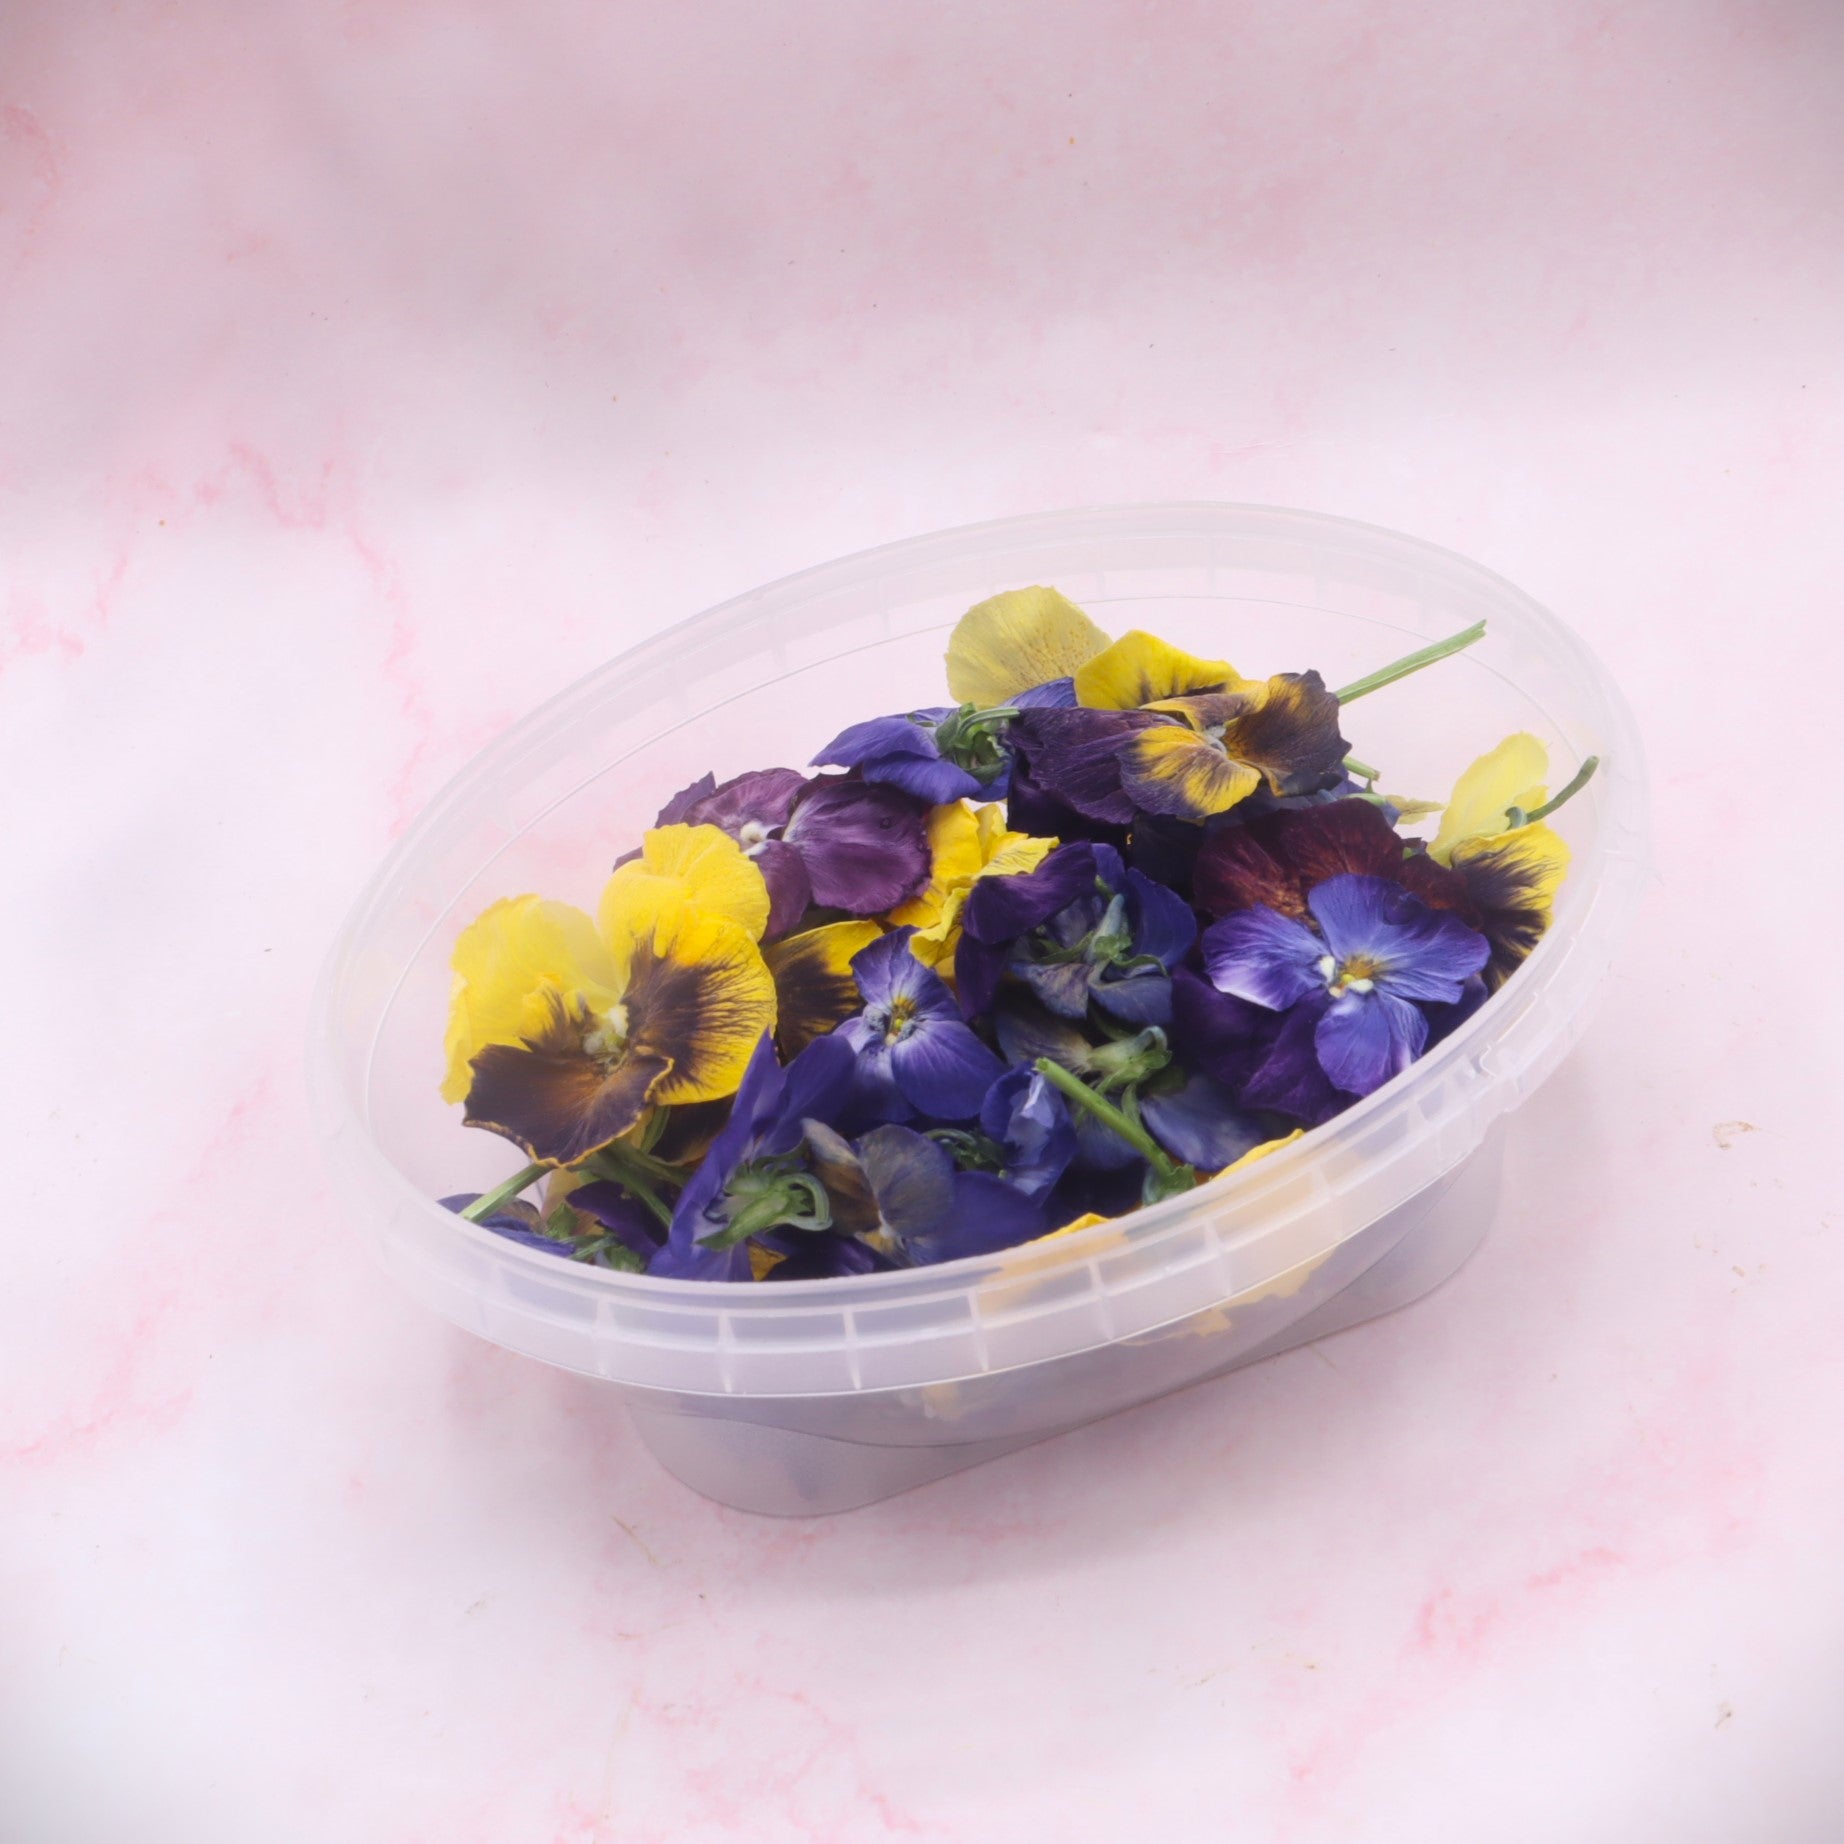 gevriesdroogde viooltjes. mix floral delight eetbare bloemen webshop